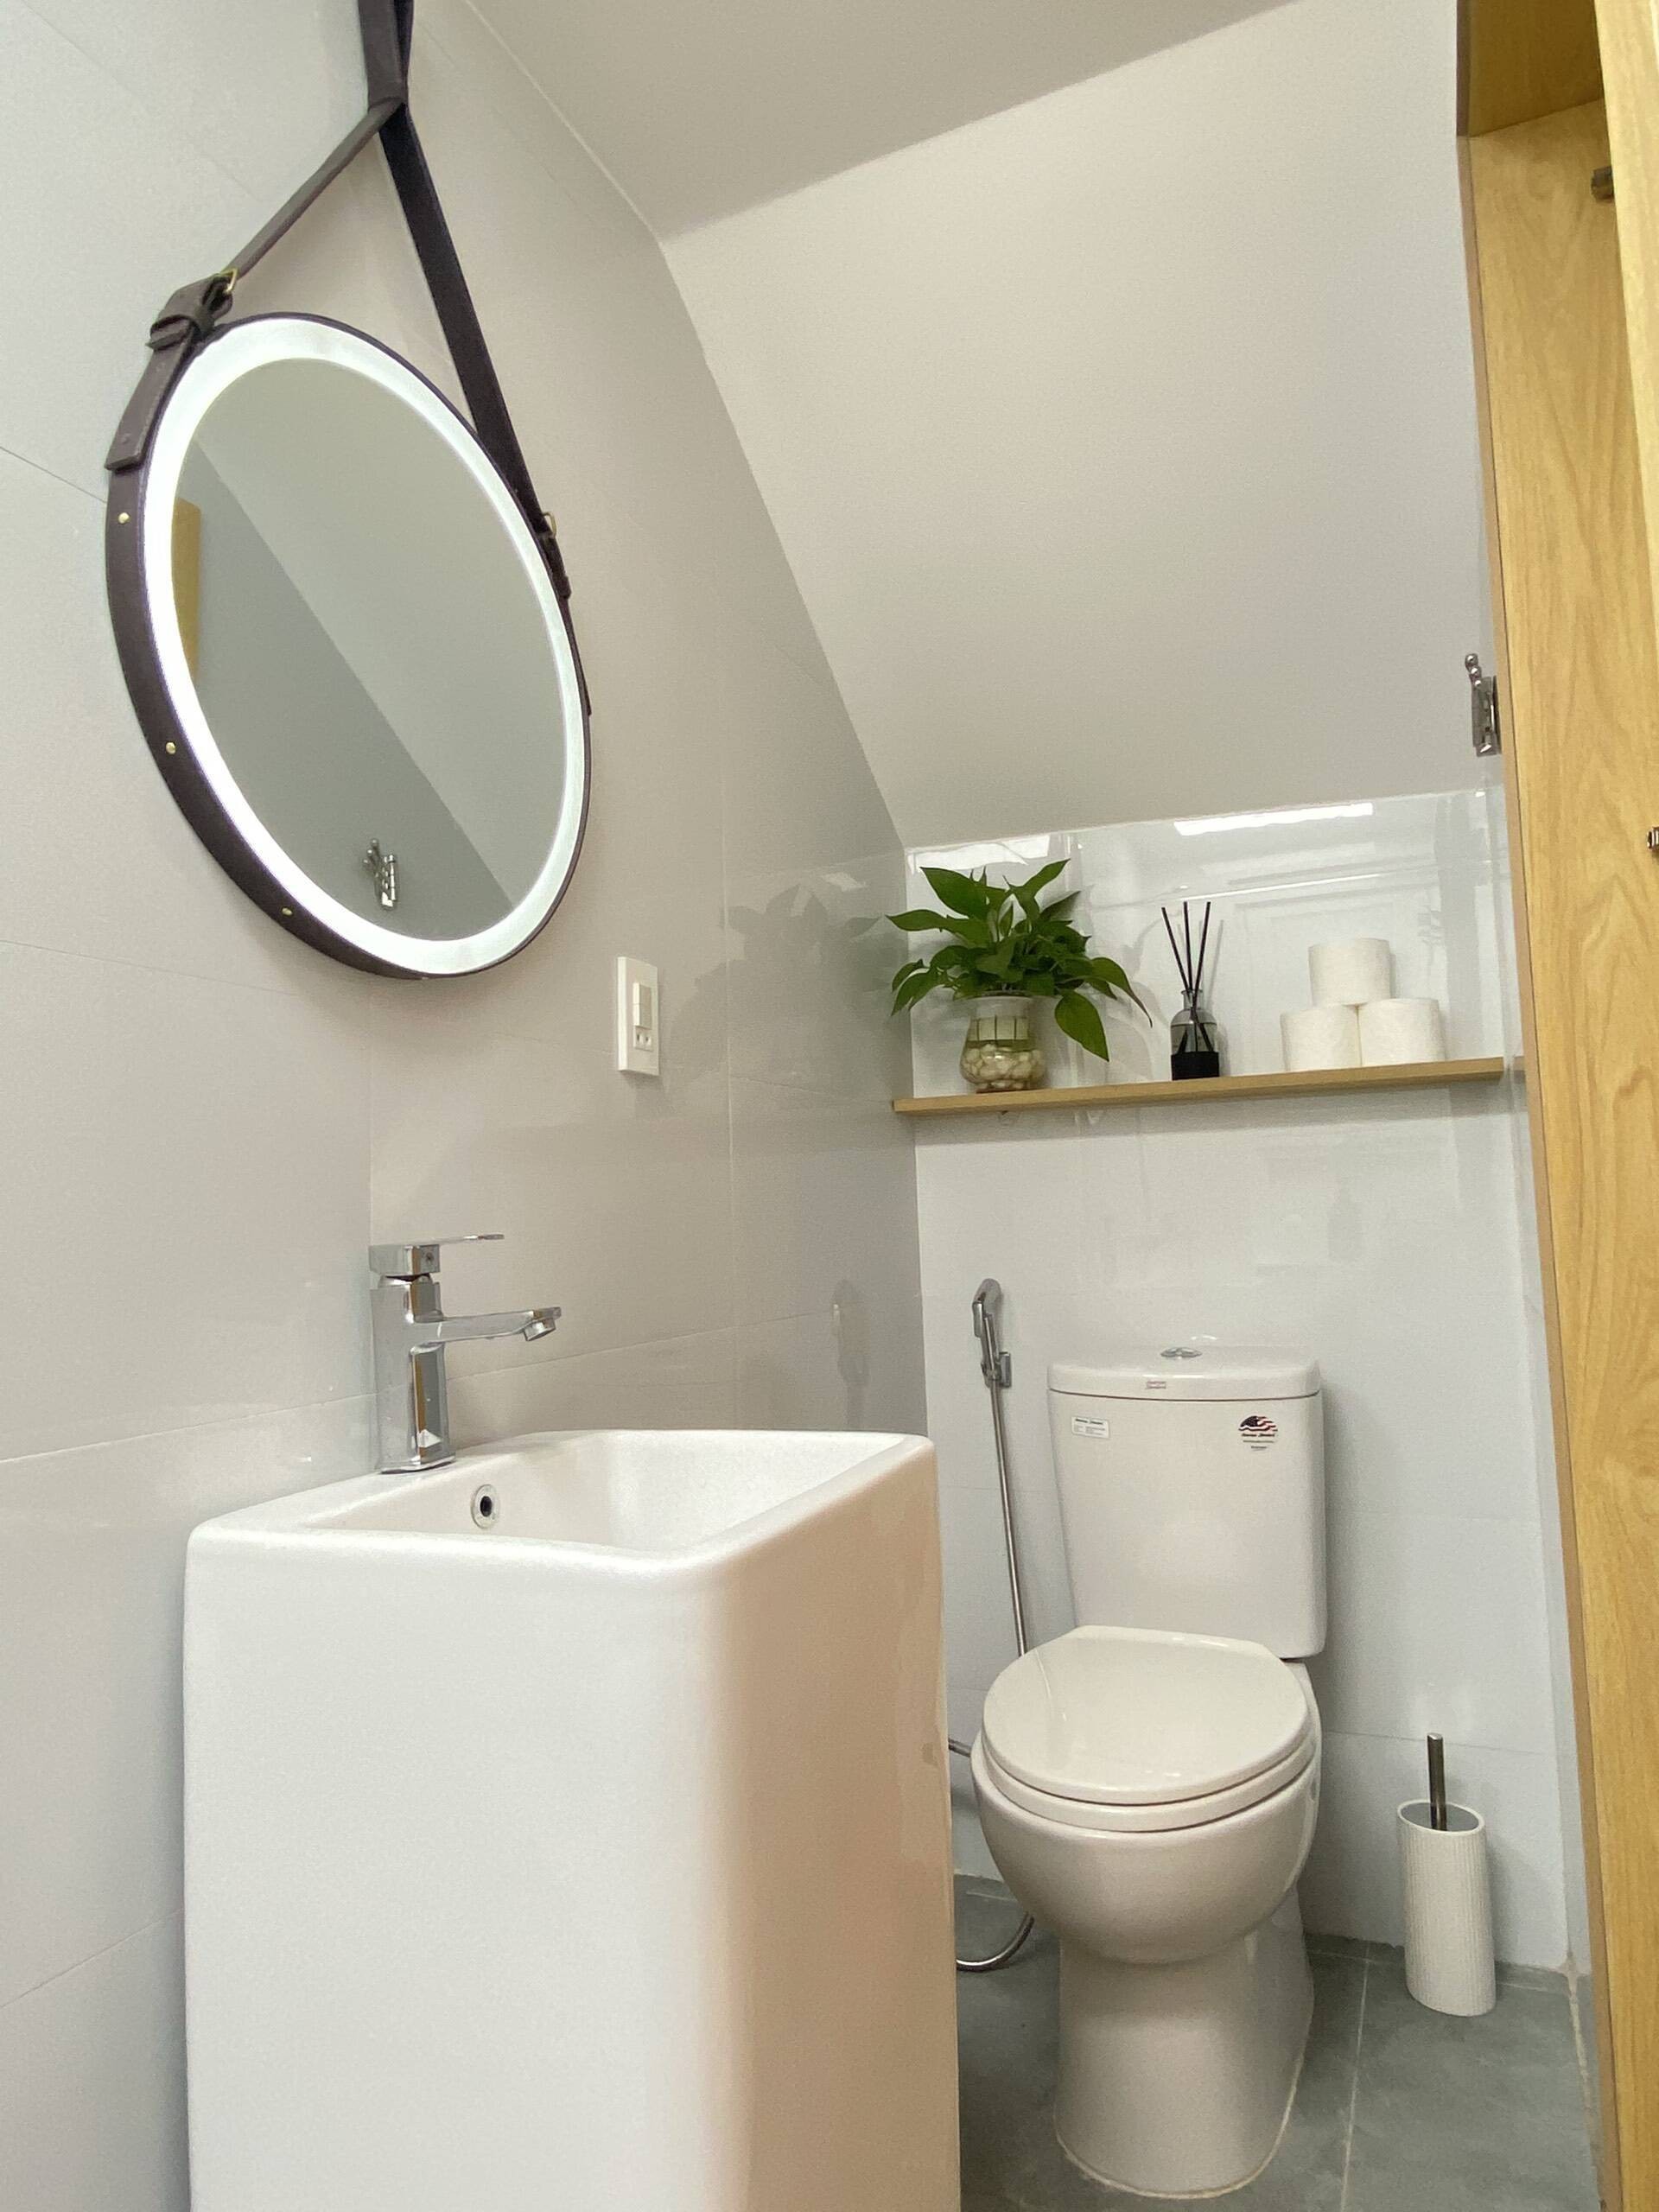 
Dùng các loại gạch có tông màu sáng là phương án được đưa ra để giúp phòng tắm chật hẹp có cảm giác rộng rãi hơn ( Ảnh: Nhà Hải Phòng)
